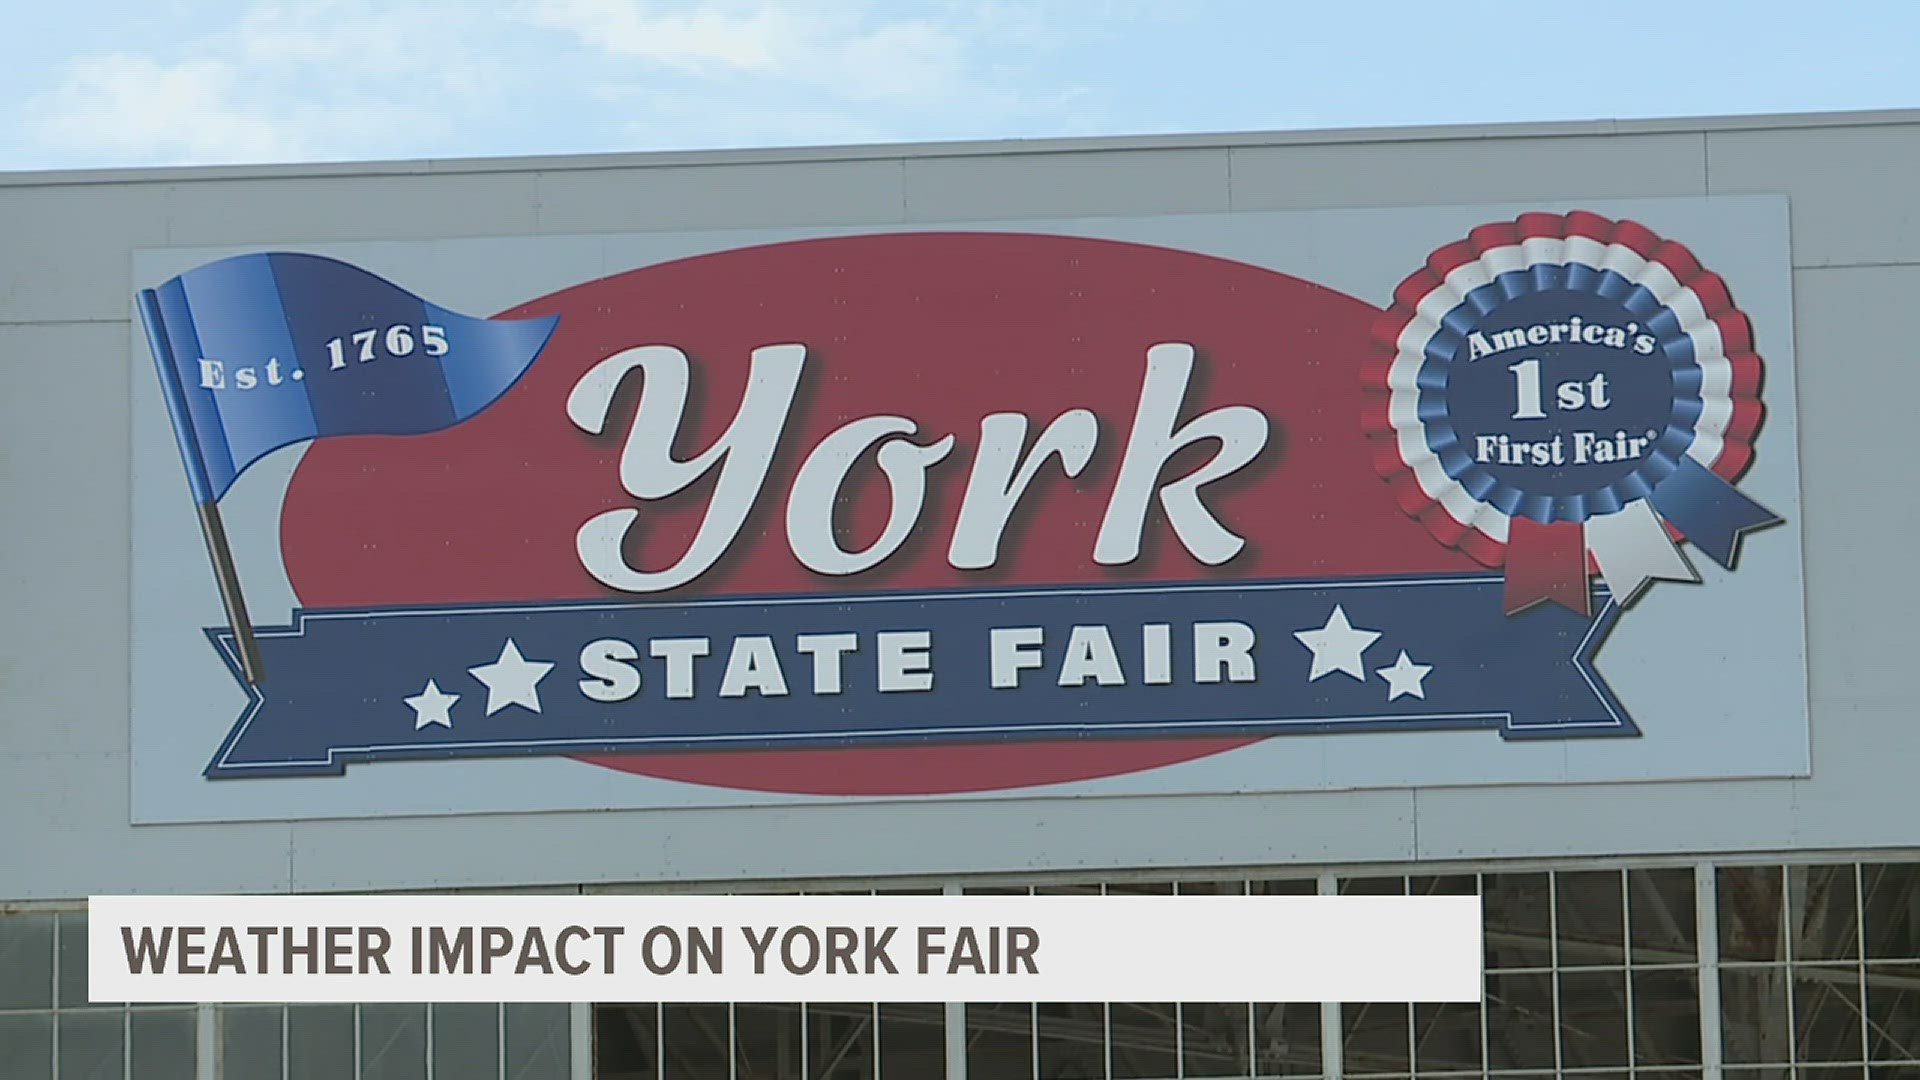 York Fairground officials hope mild weekend weather boosts attendance